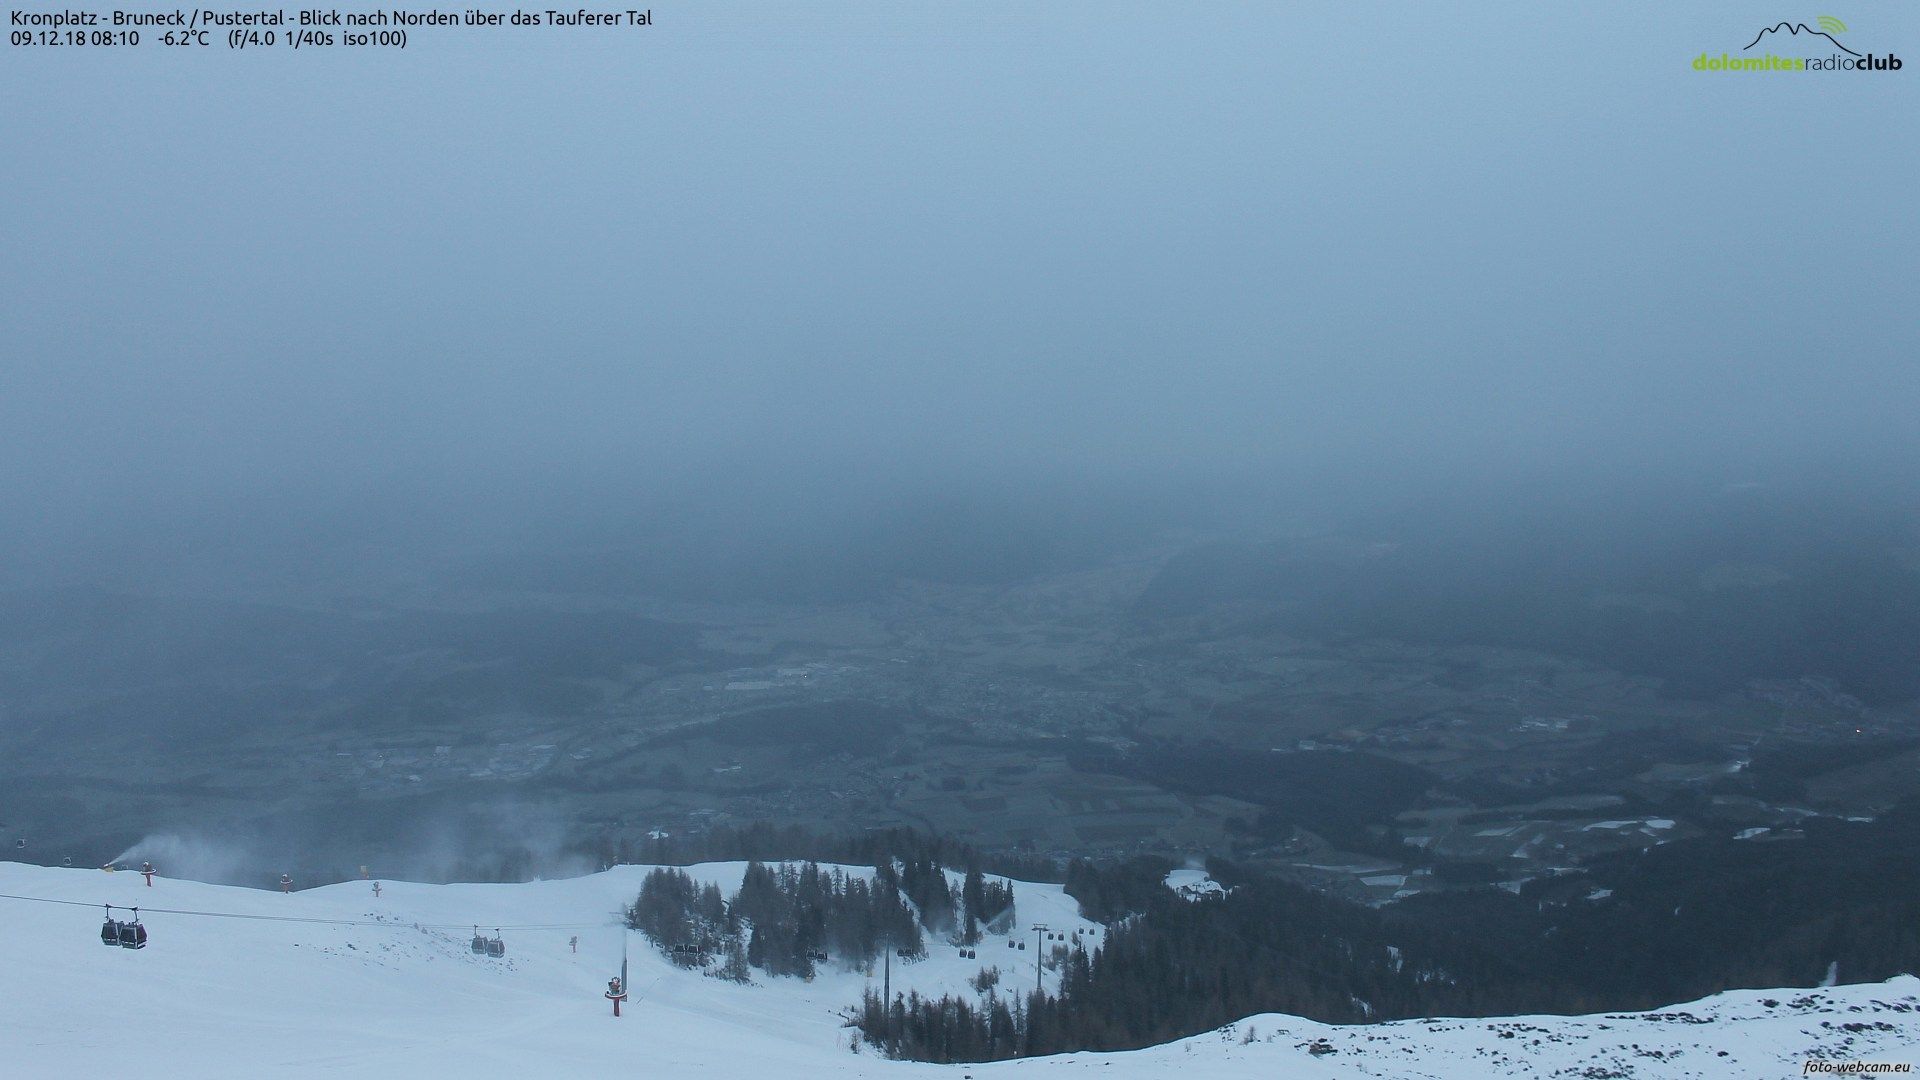 Het skigebied Kronplatz in Zuidtirol pakt ook wat sneeuw mee, maar veel zal het niet zijn.